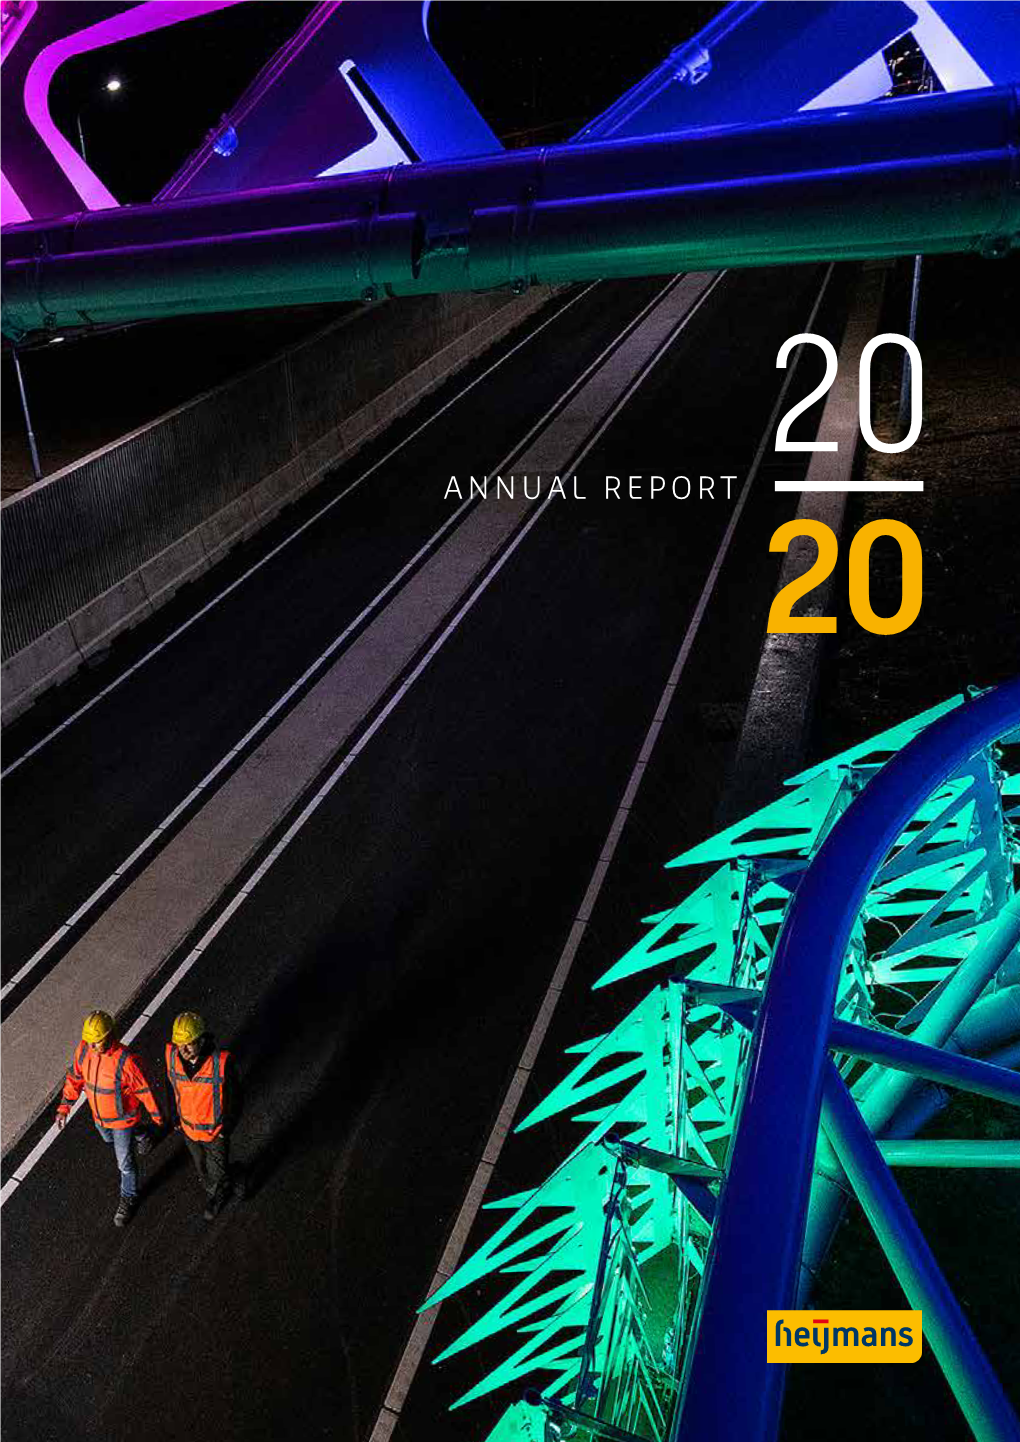 Annual Report 2020.Pdf